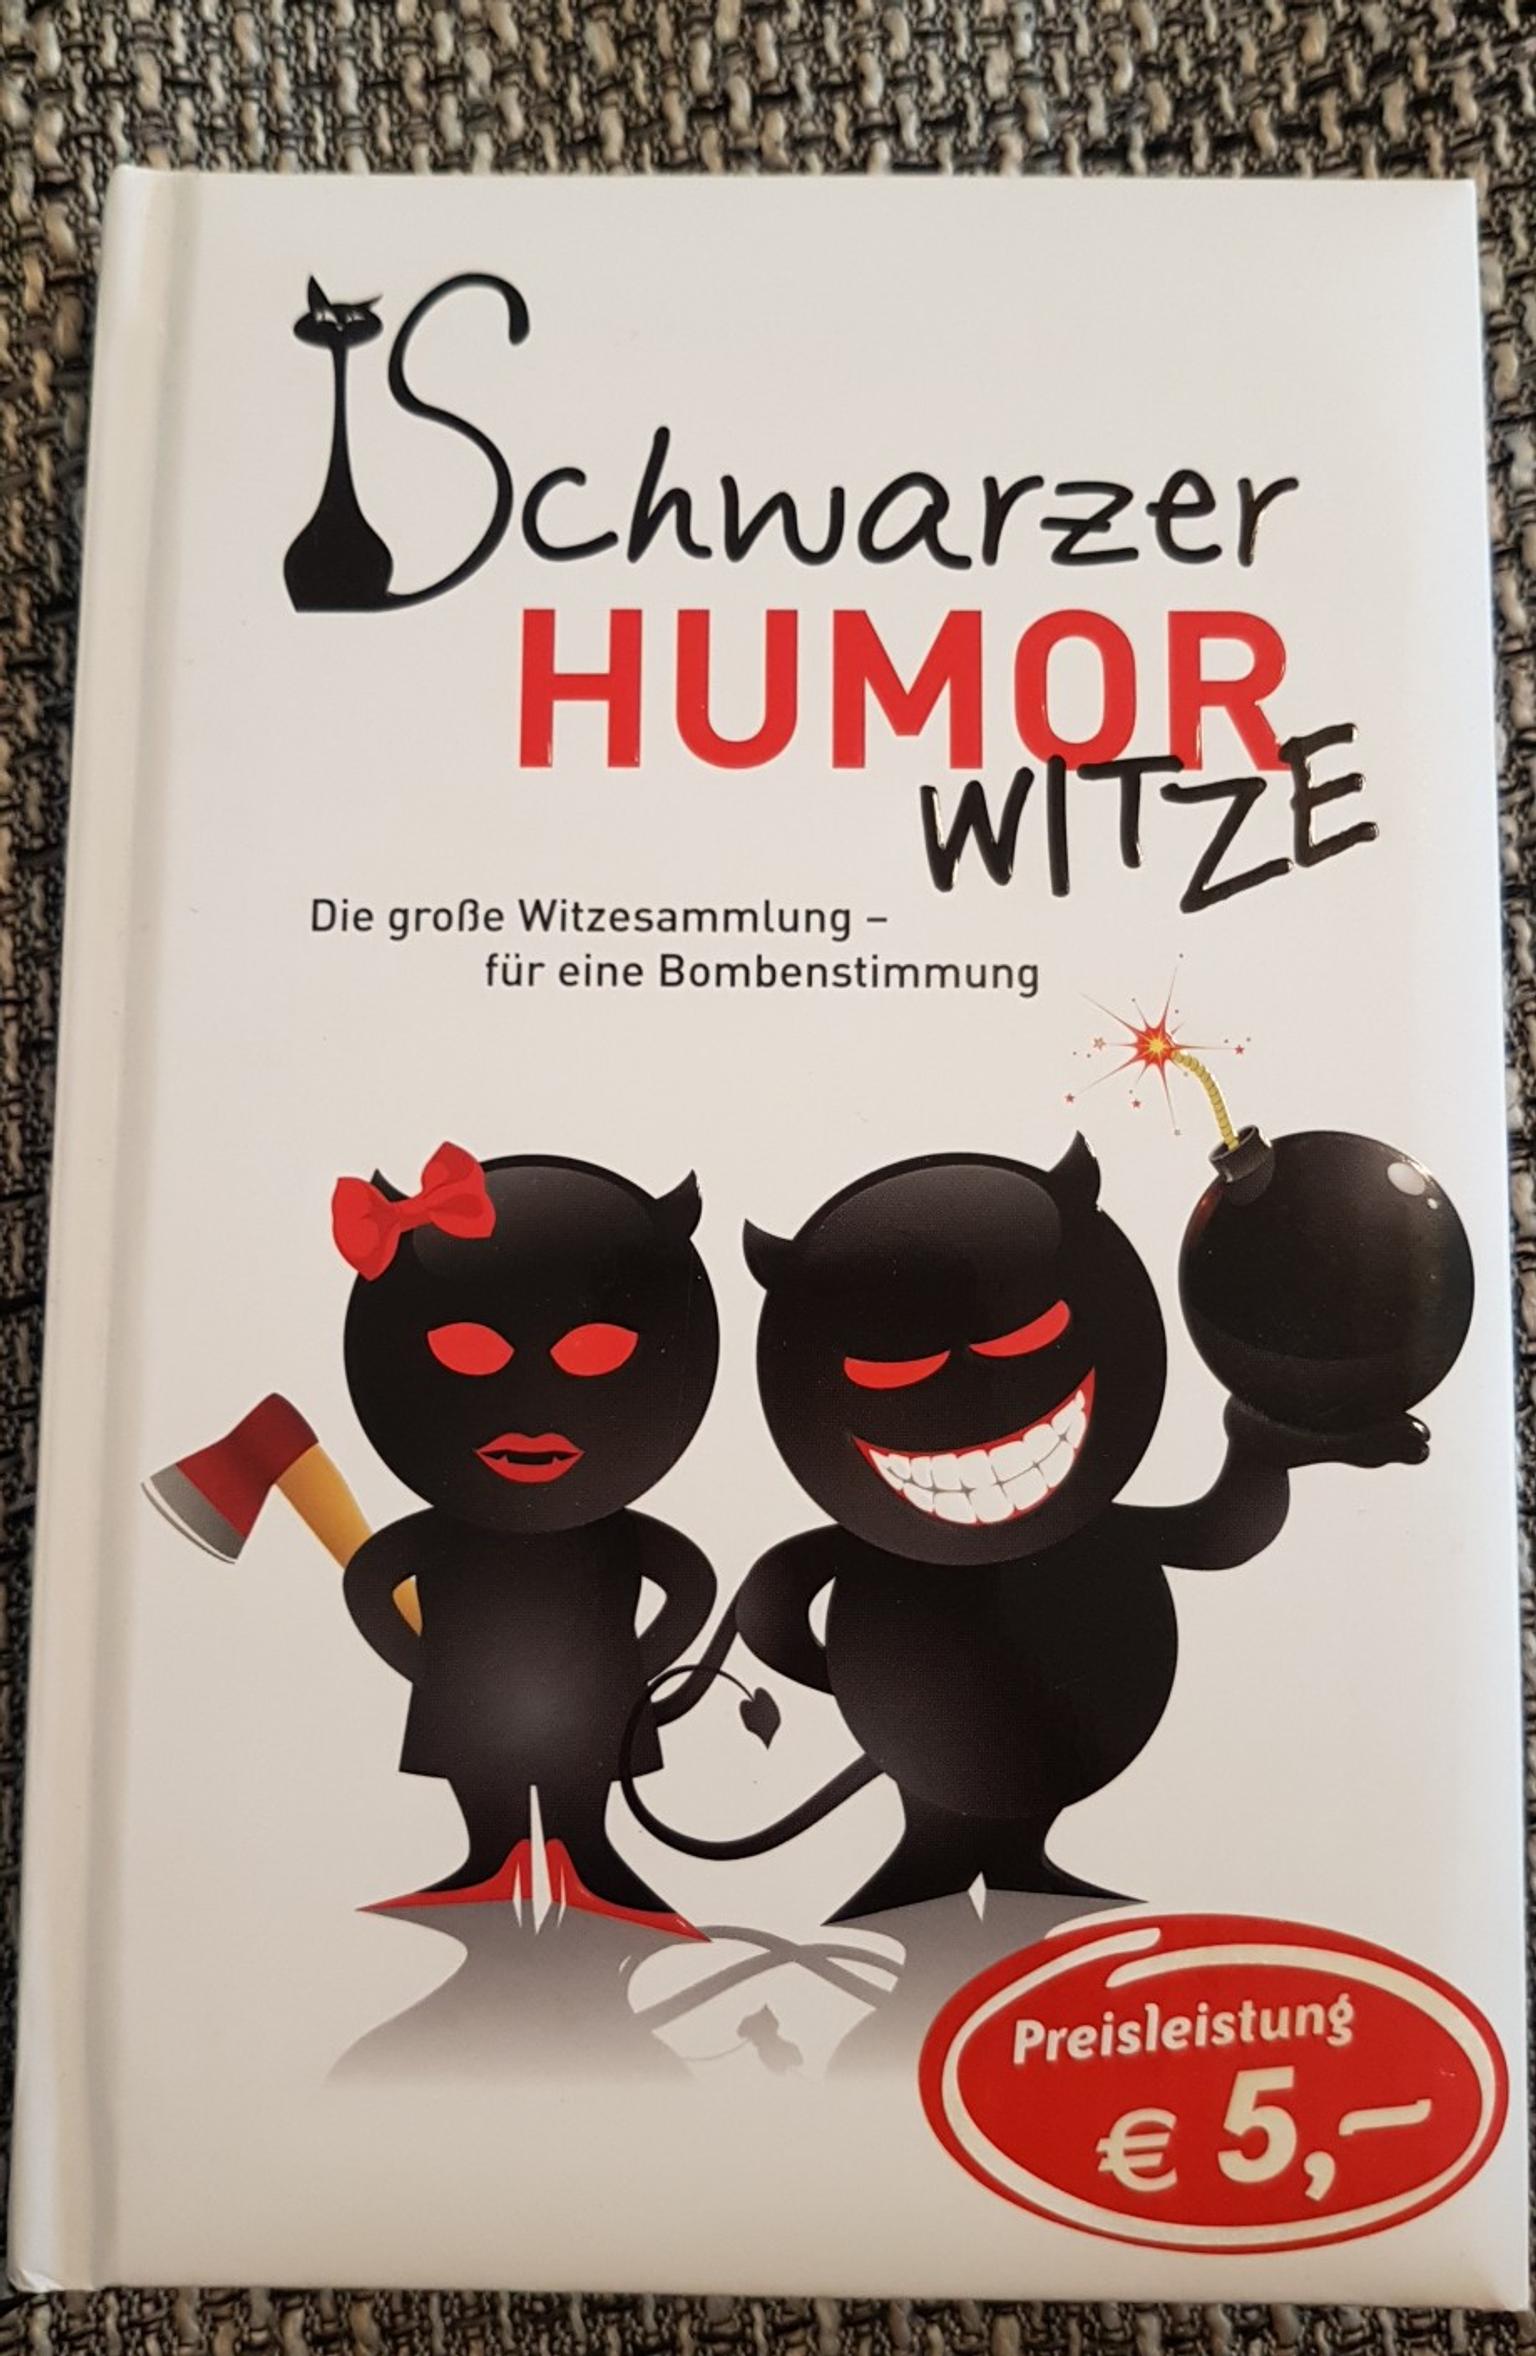 Die Besten Spruche Witze Schwarzer Humor German Youtube